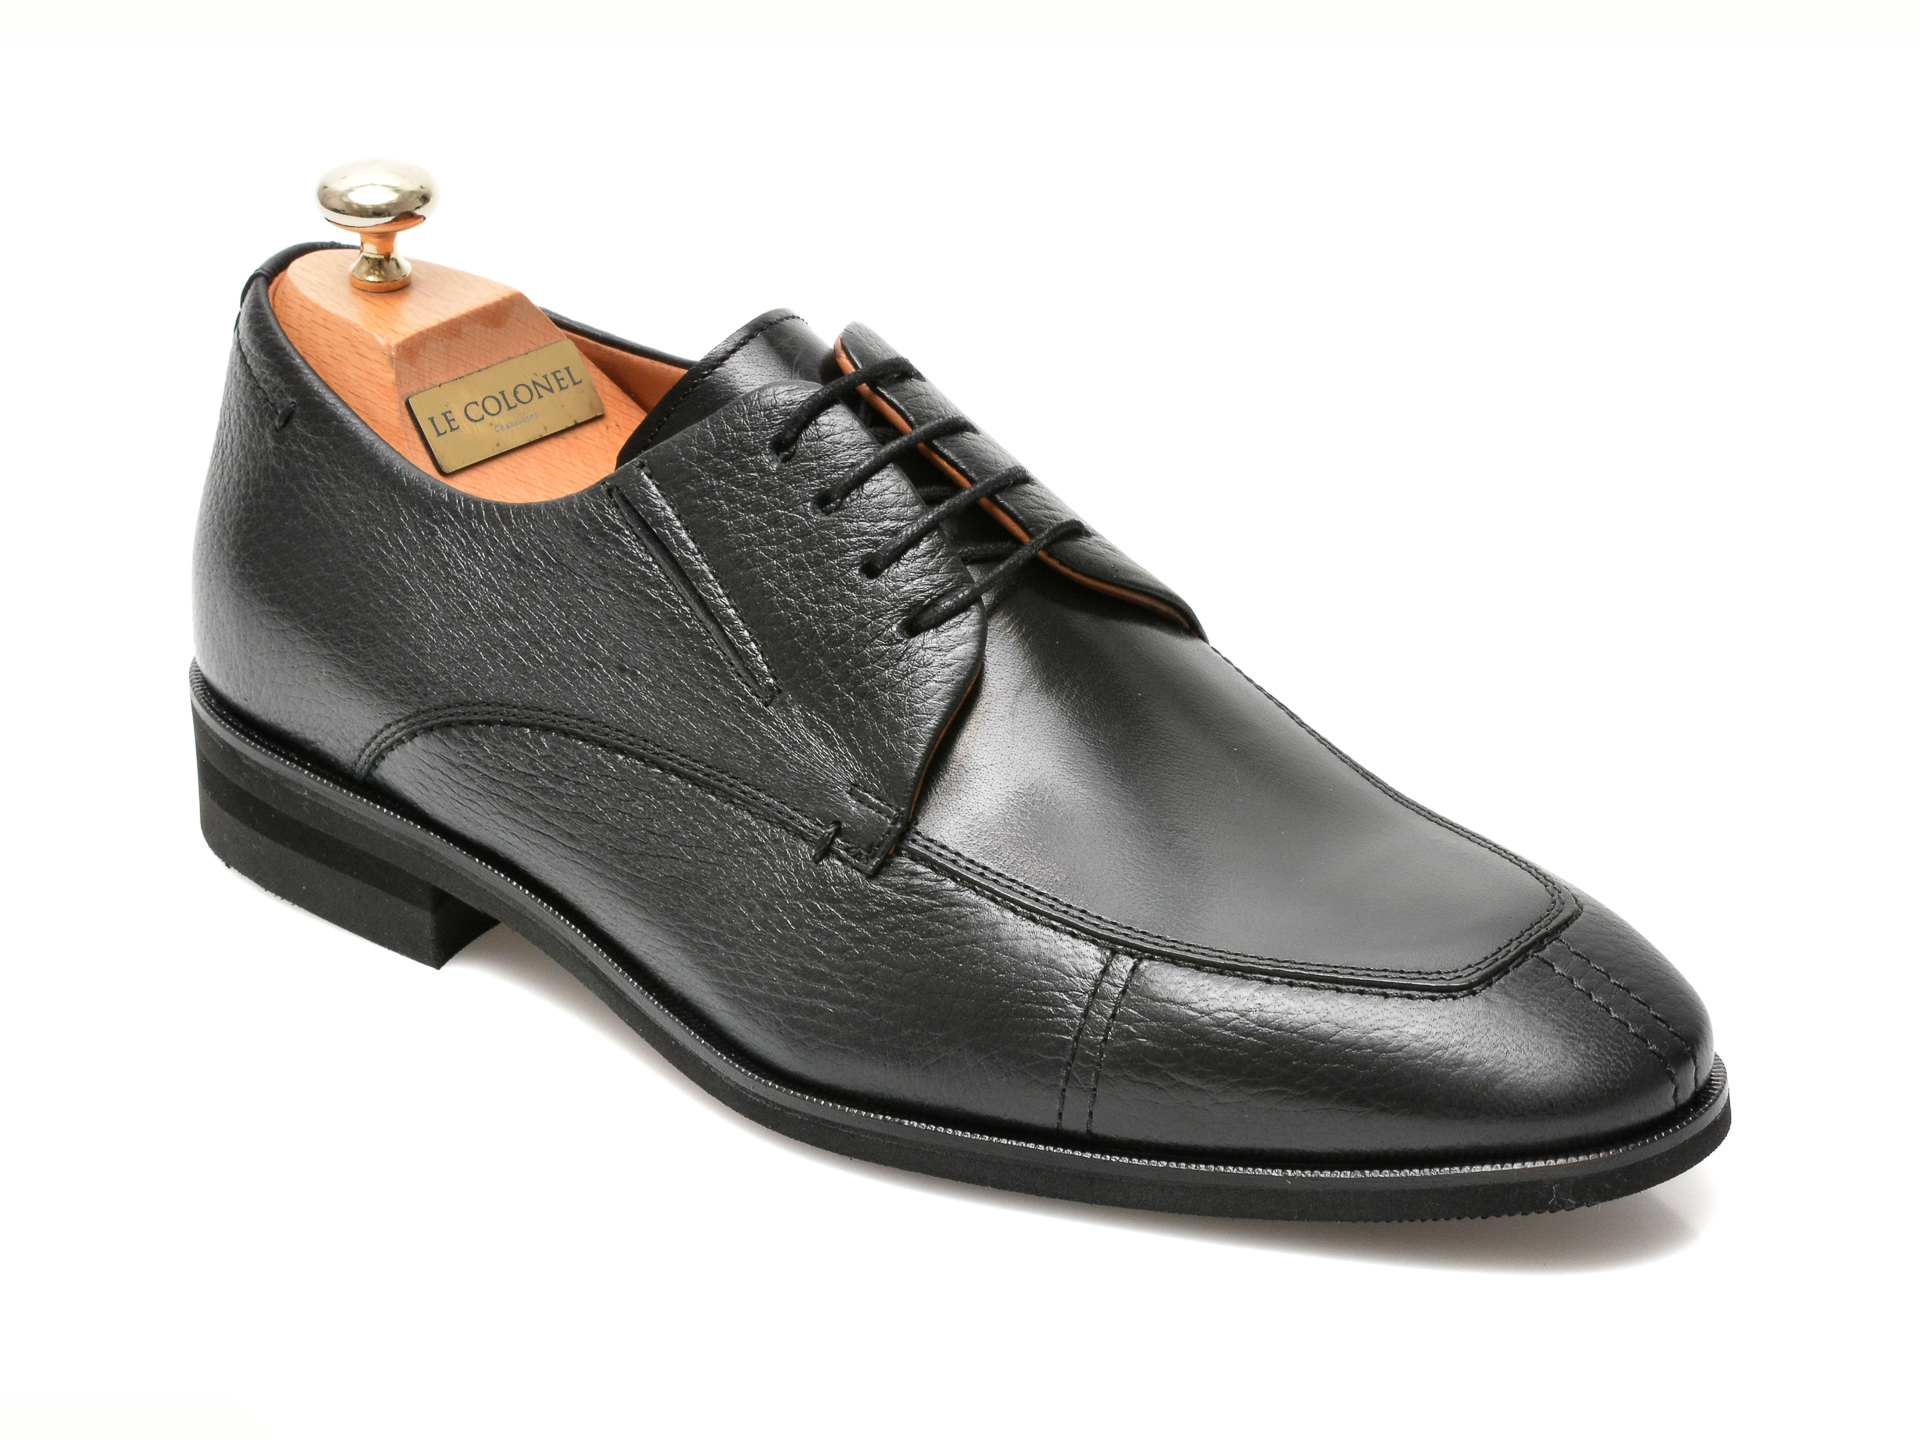 Pantofi LE COLONEL negri, 48761, din piele naturala 2022 ❤️ Pret Super otter.ro imagine noua 2022